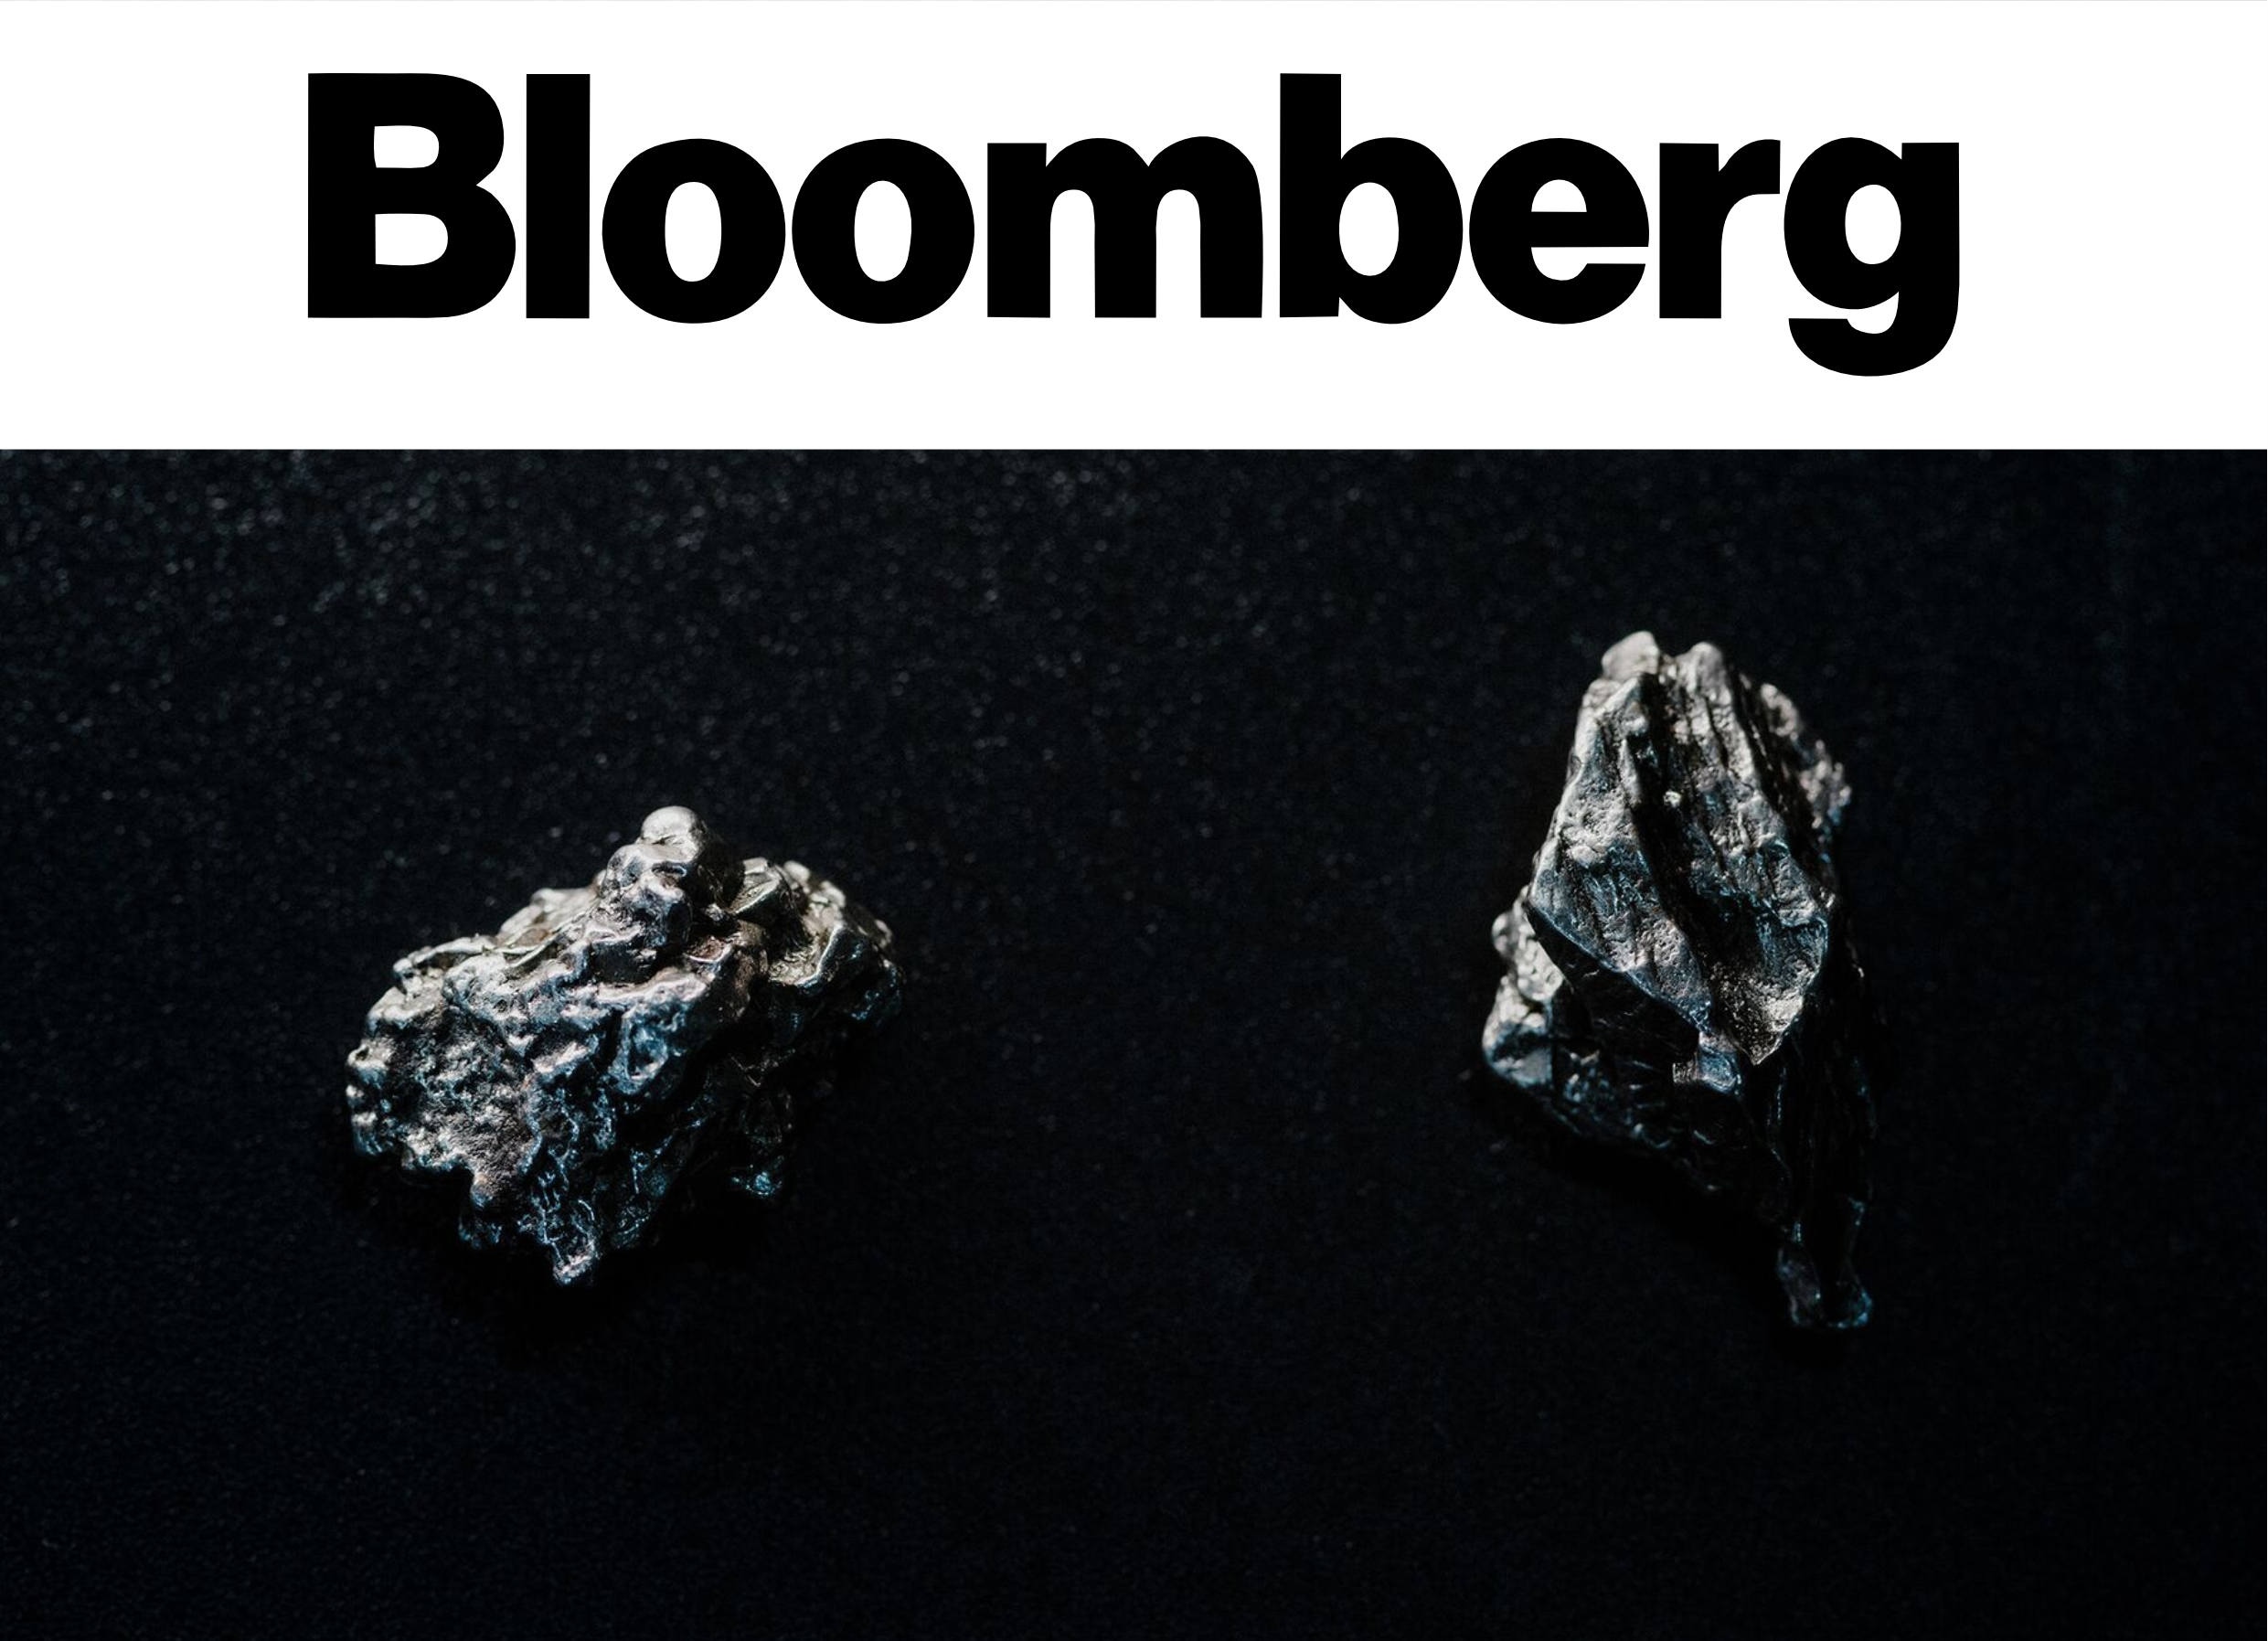 Получить финансирование для освоения астероидов проще, чем добыть там золото